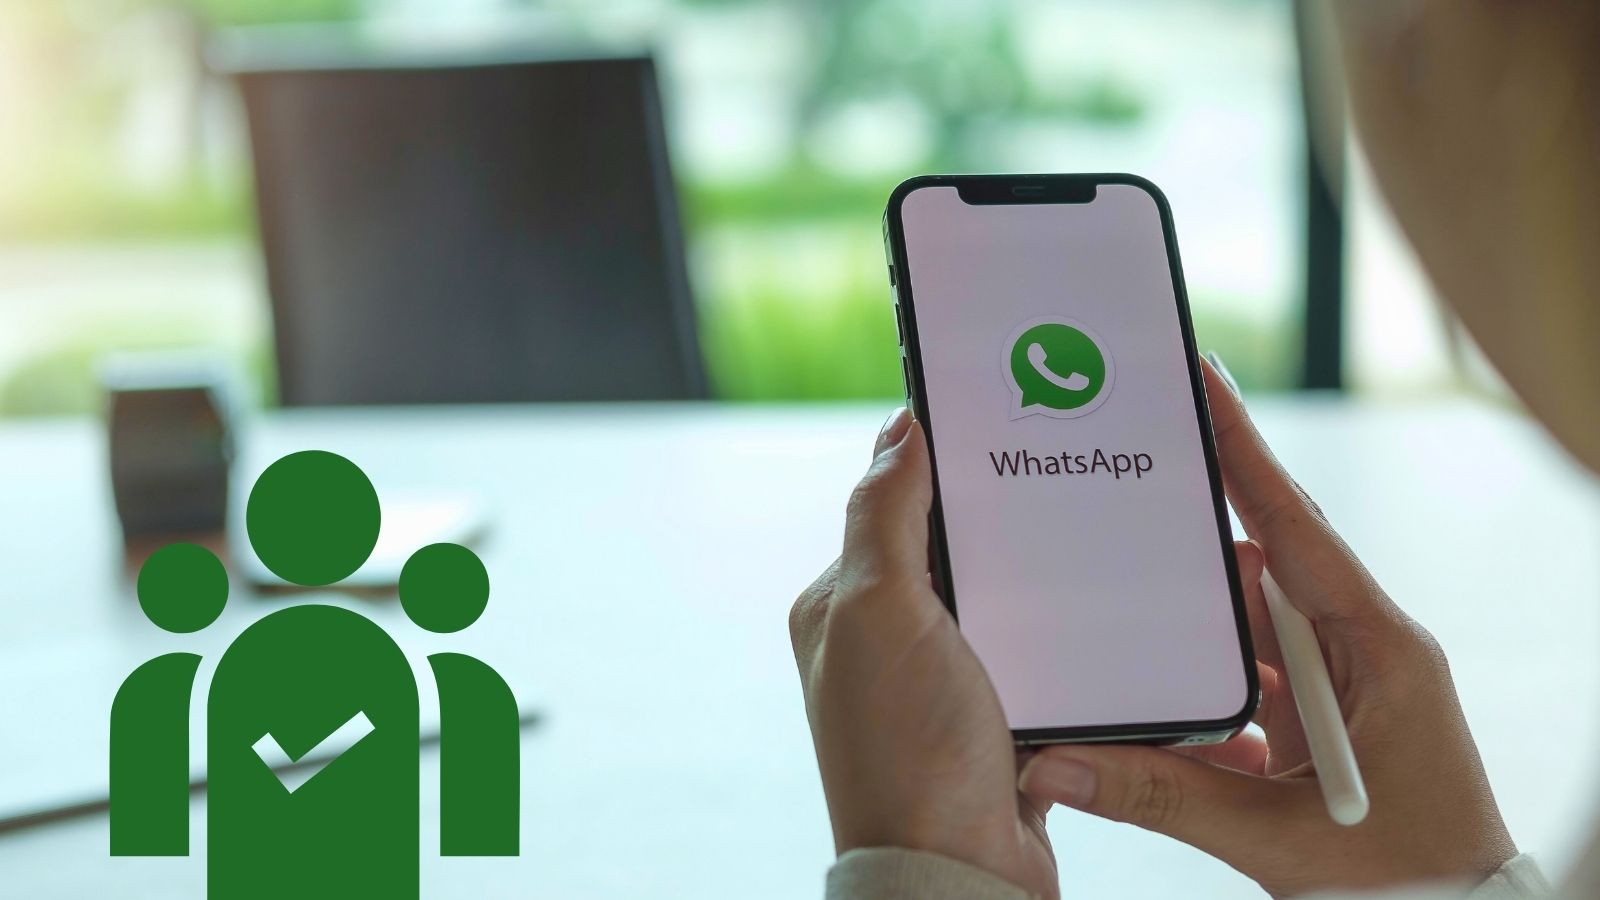  WhatsApp, come controllare l'ultimo accesso: il trucco perfetto